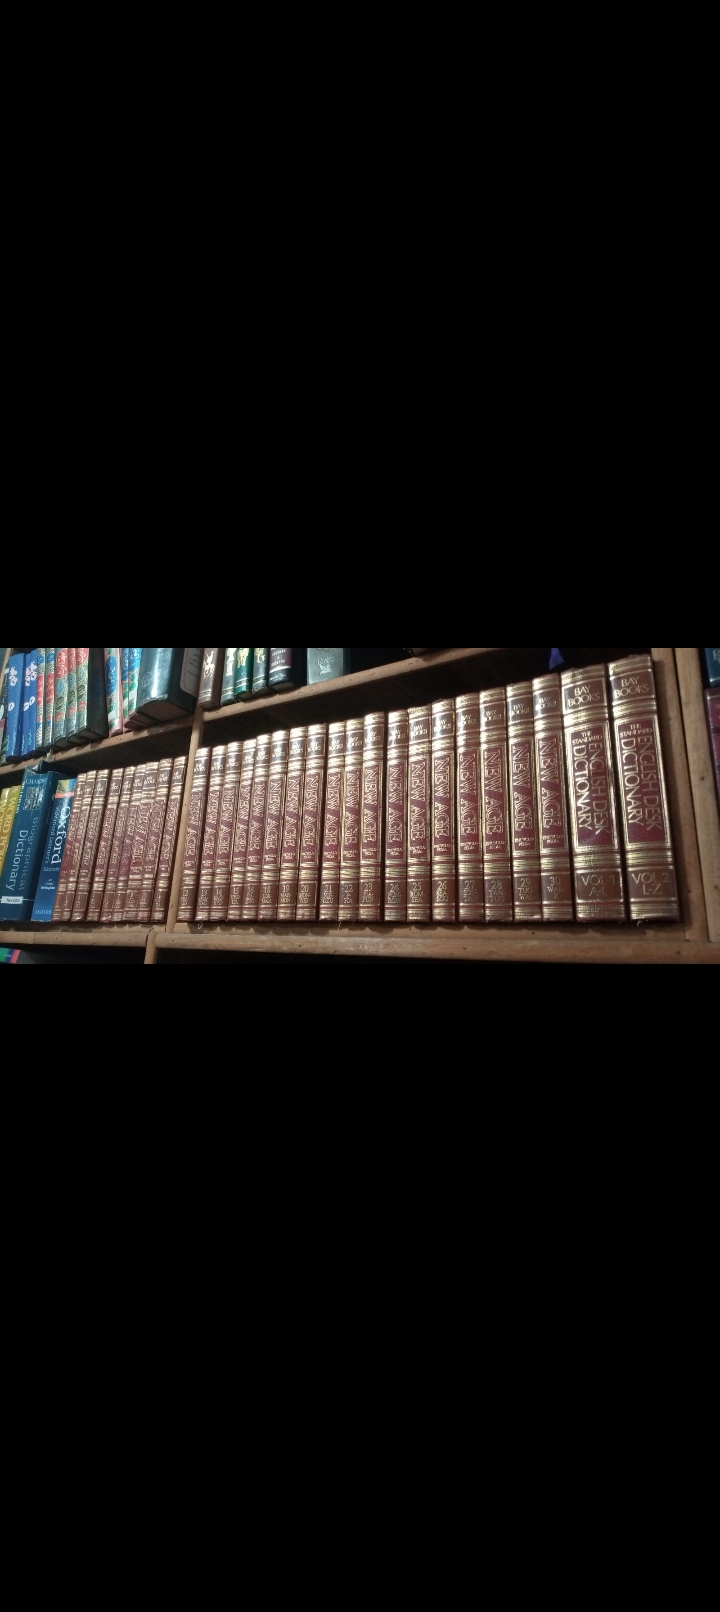 bay books english dictionary encyclopedia